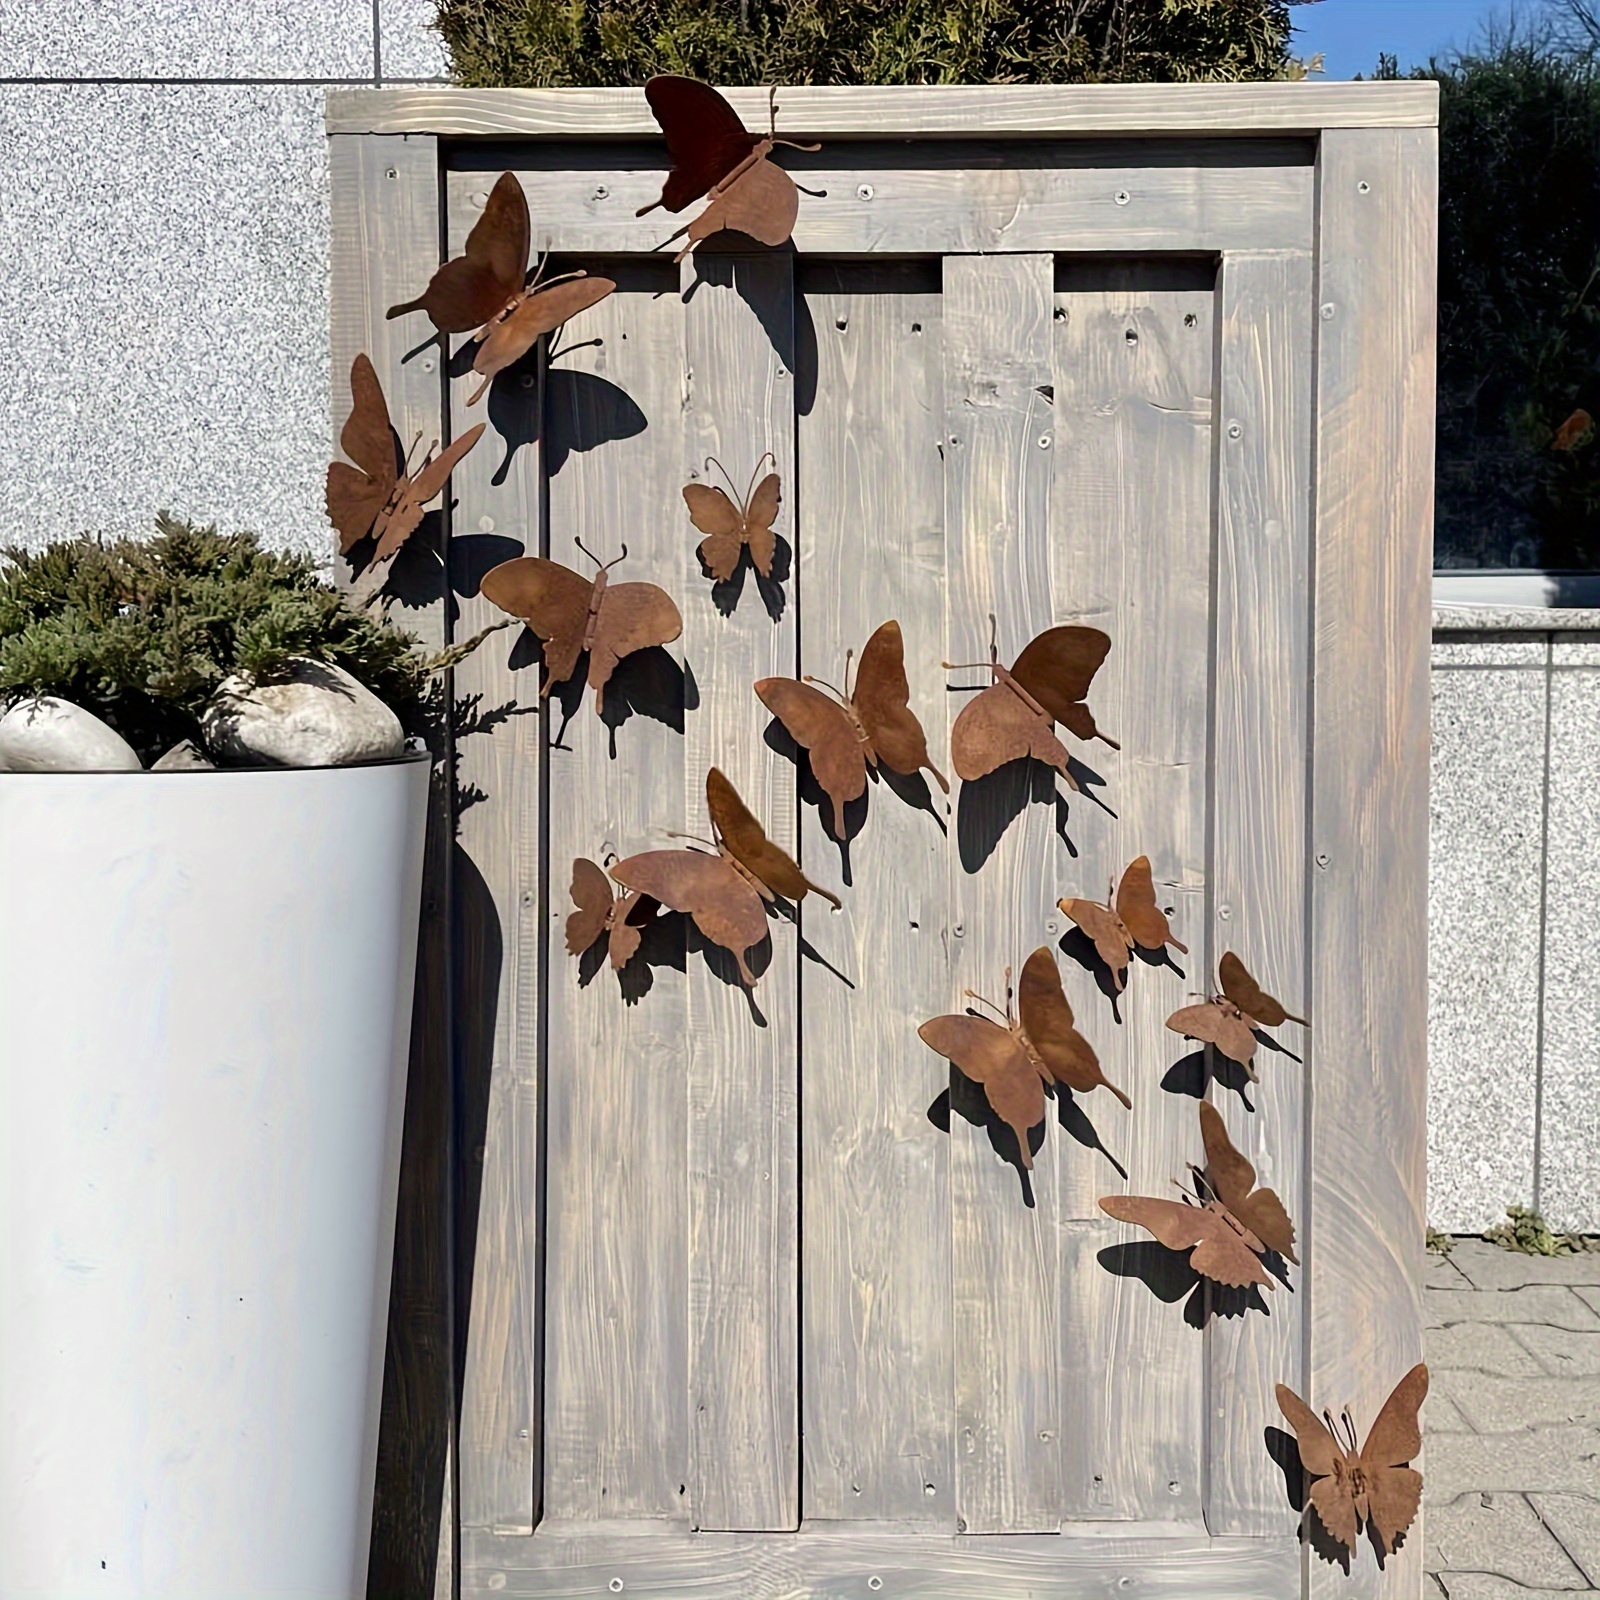 

15pcs Butterfly Outdoor Wall Decor, Rusty Metal Art For Garden Fence Yard Decor, Outdoor Home Decor, Metal Insert Wall Art Decor